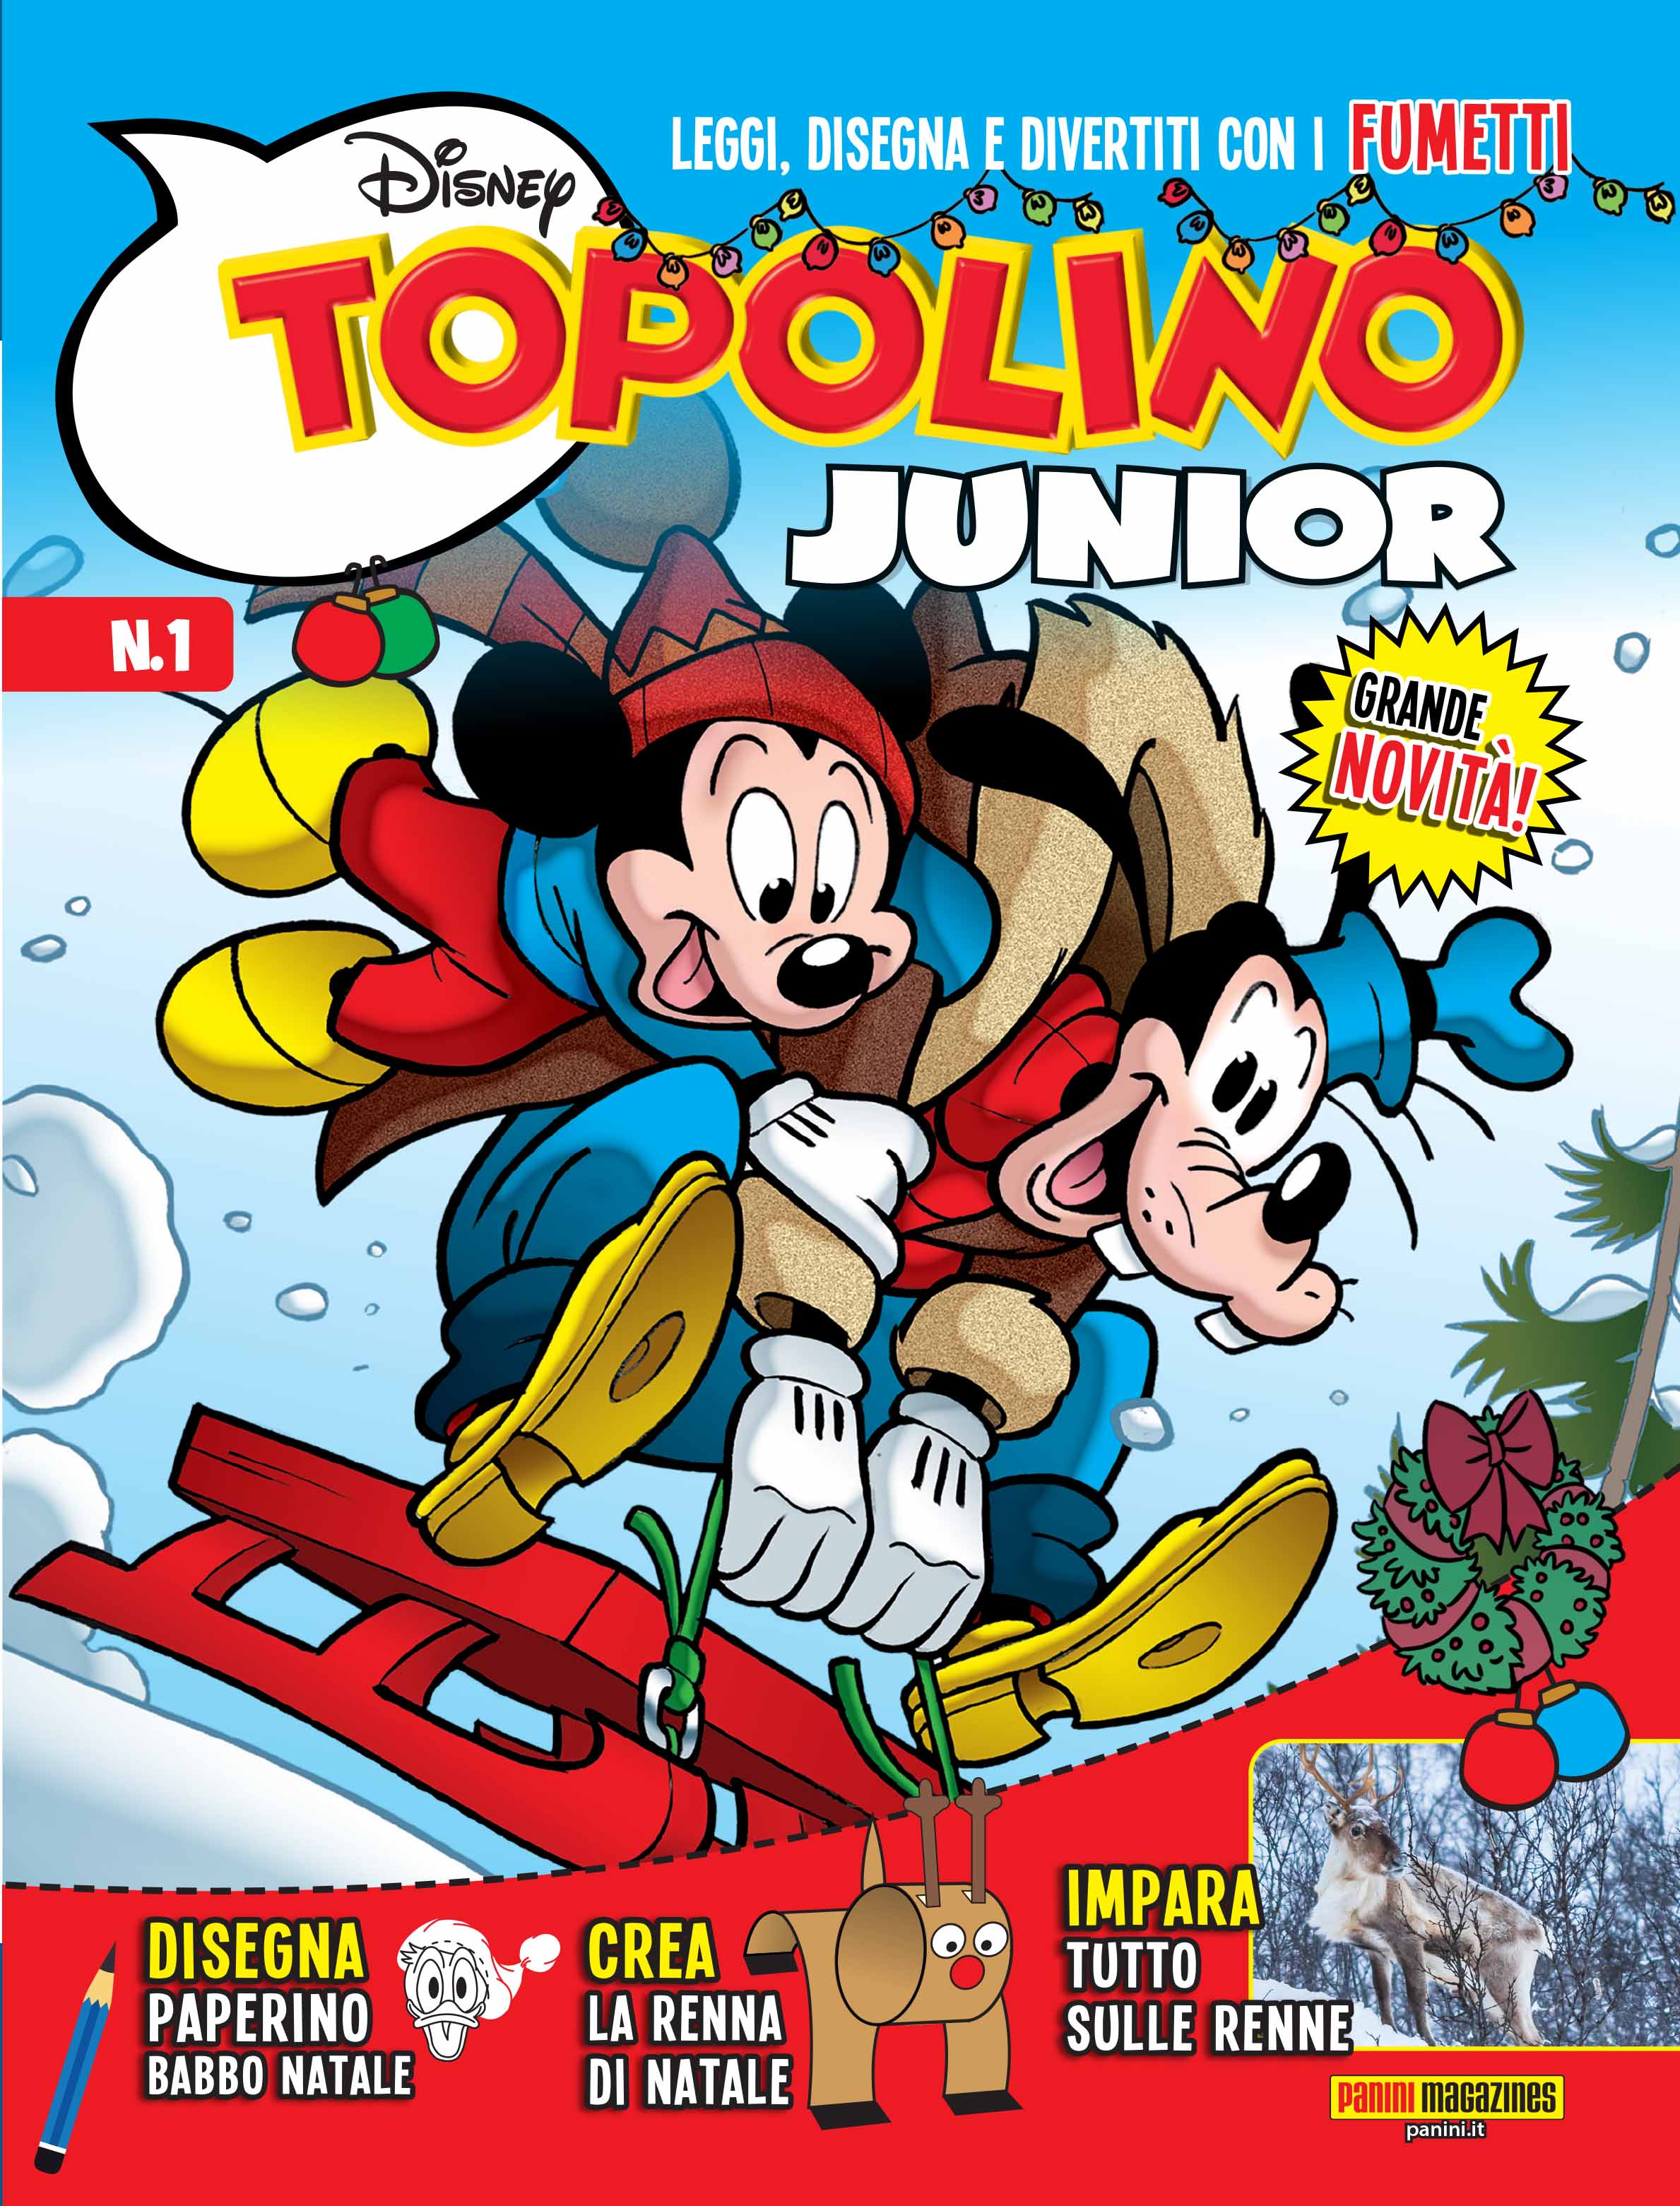 Arriva TOPOLINO JUNIOR - Dal 20 novembre la nuova rivista pensata per i piccoli lettori per un primo approccio alla lettura